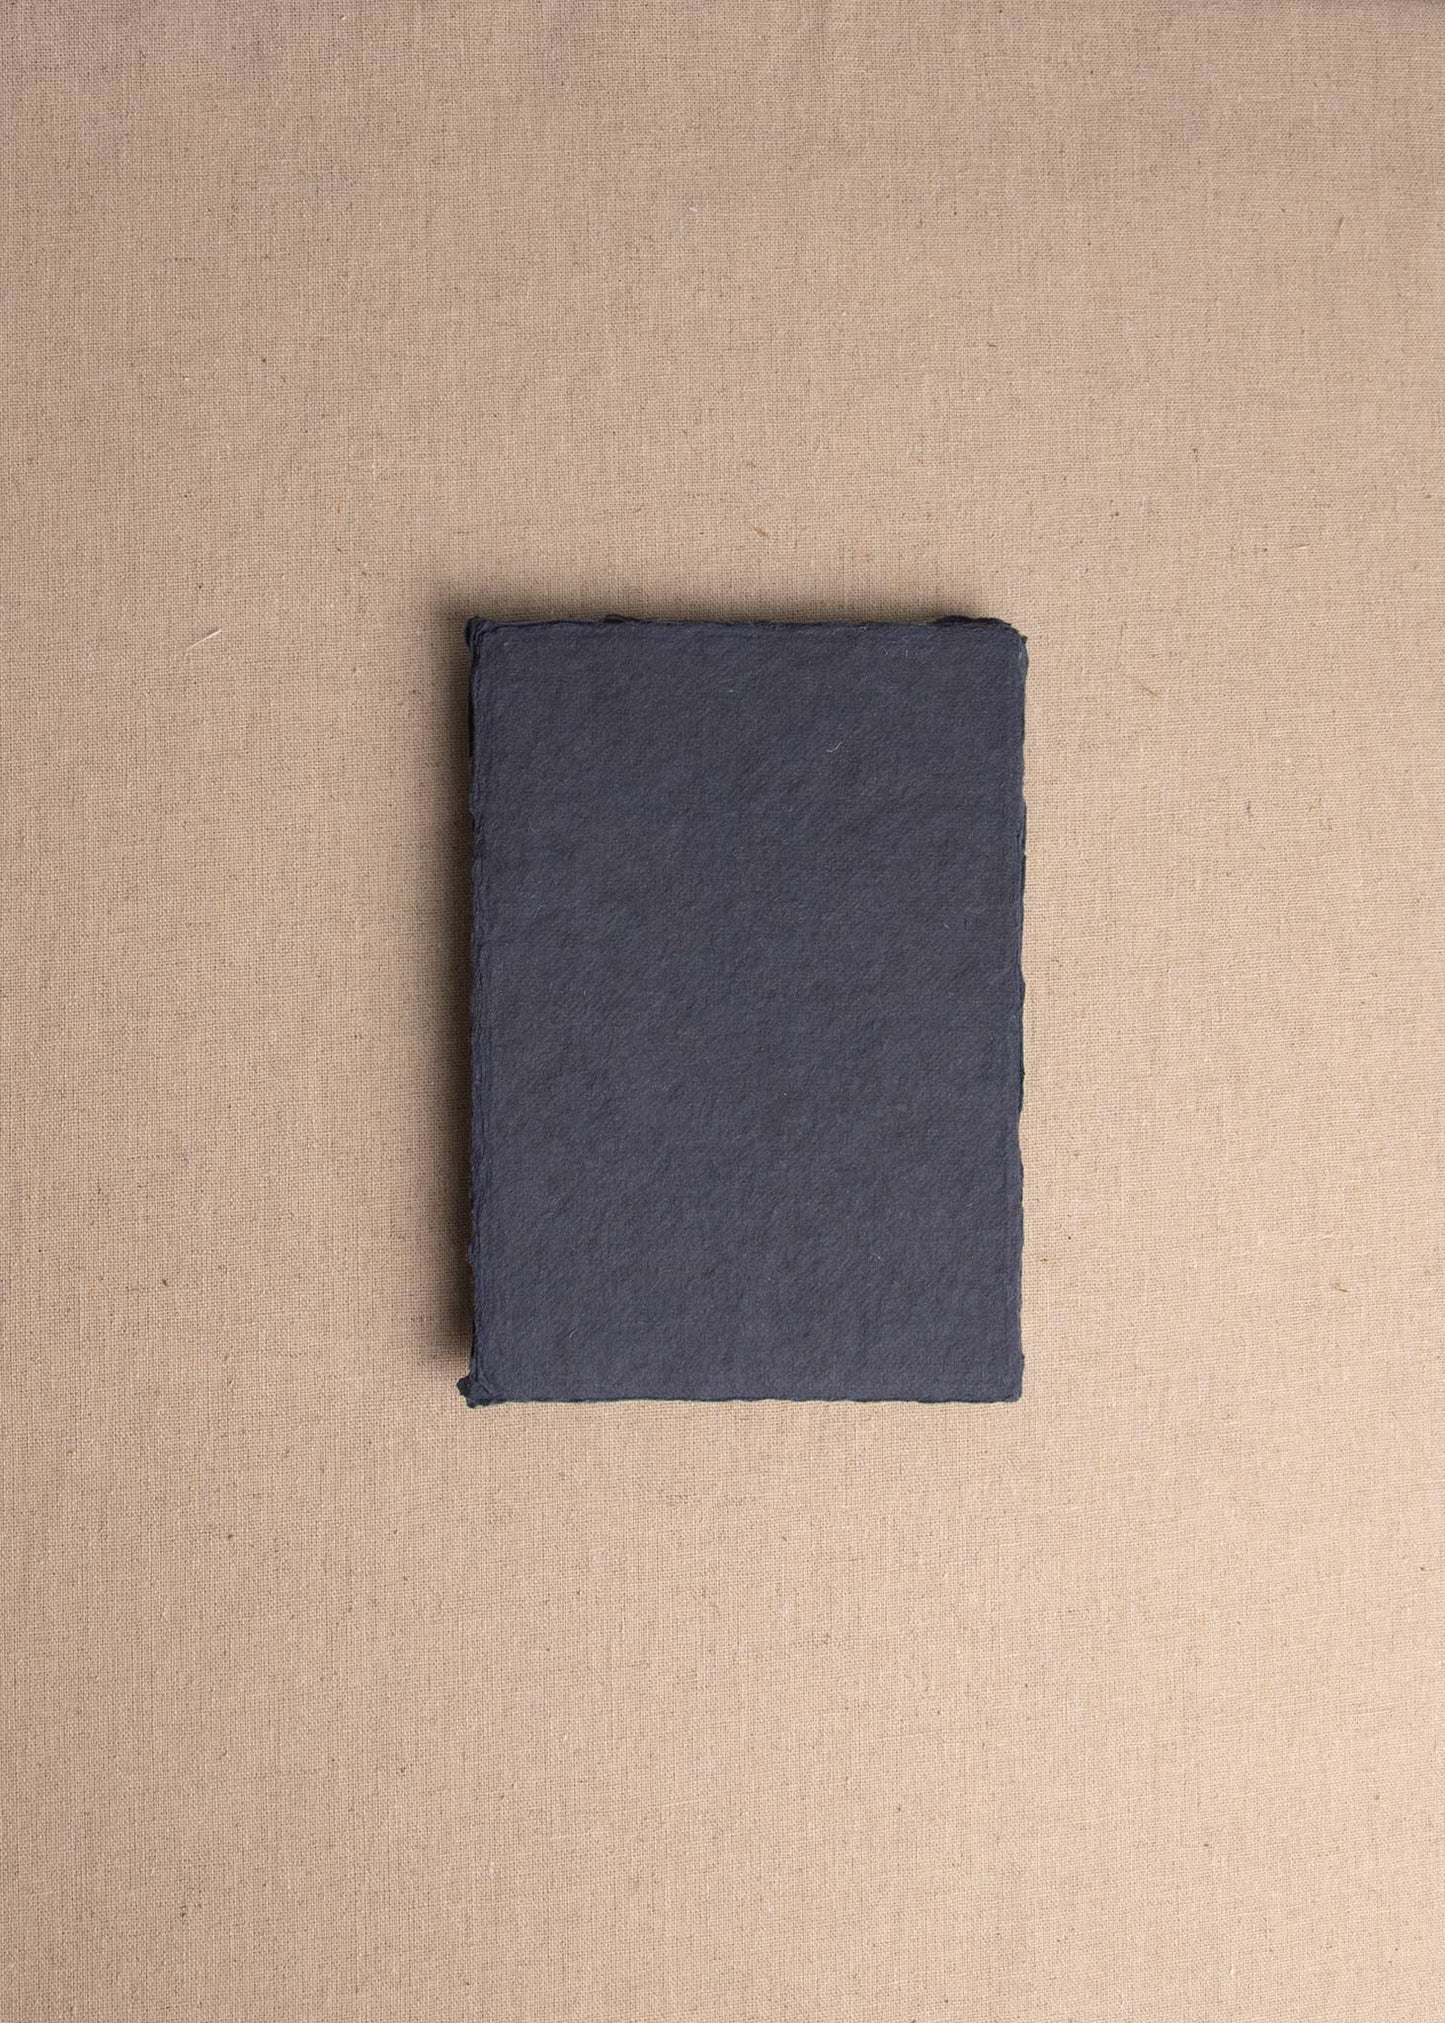 Singular 5x7 Dark Blue Handmade paper envelope with deckle edge on linen background